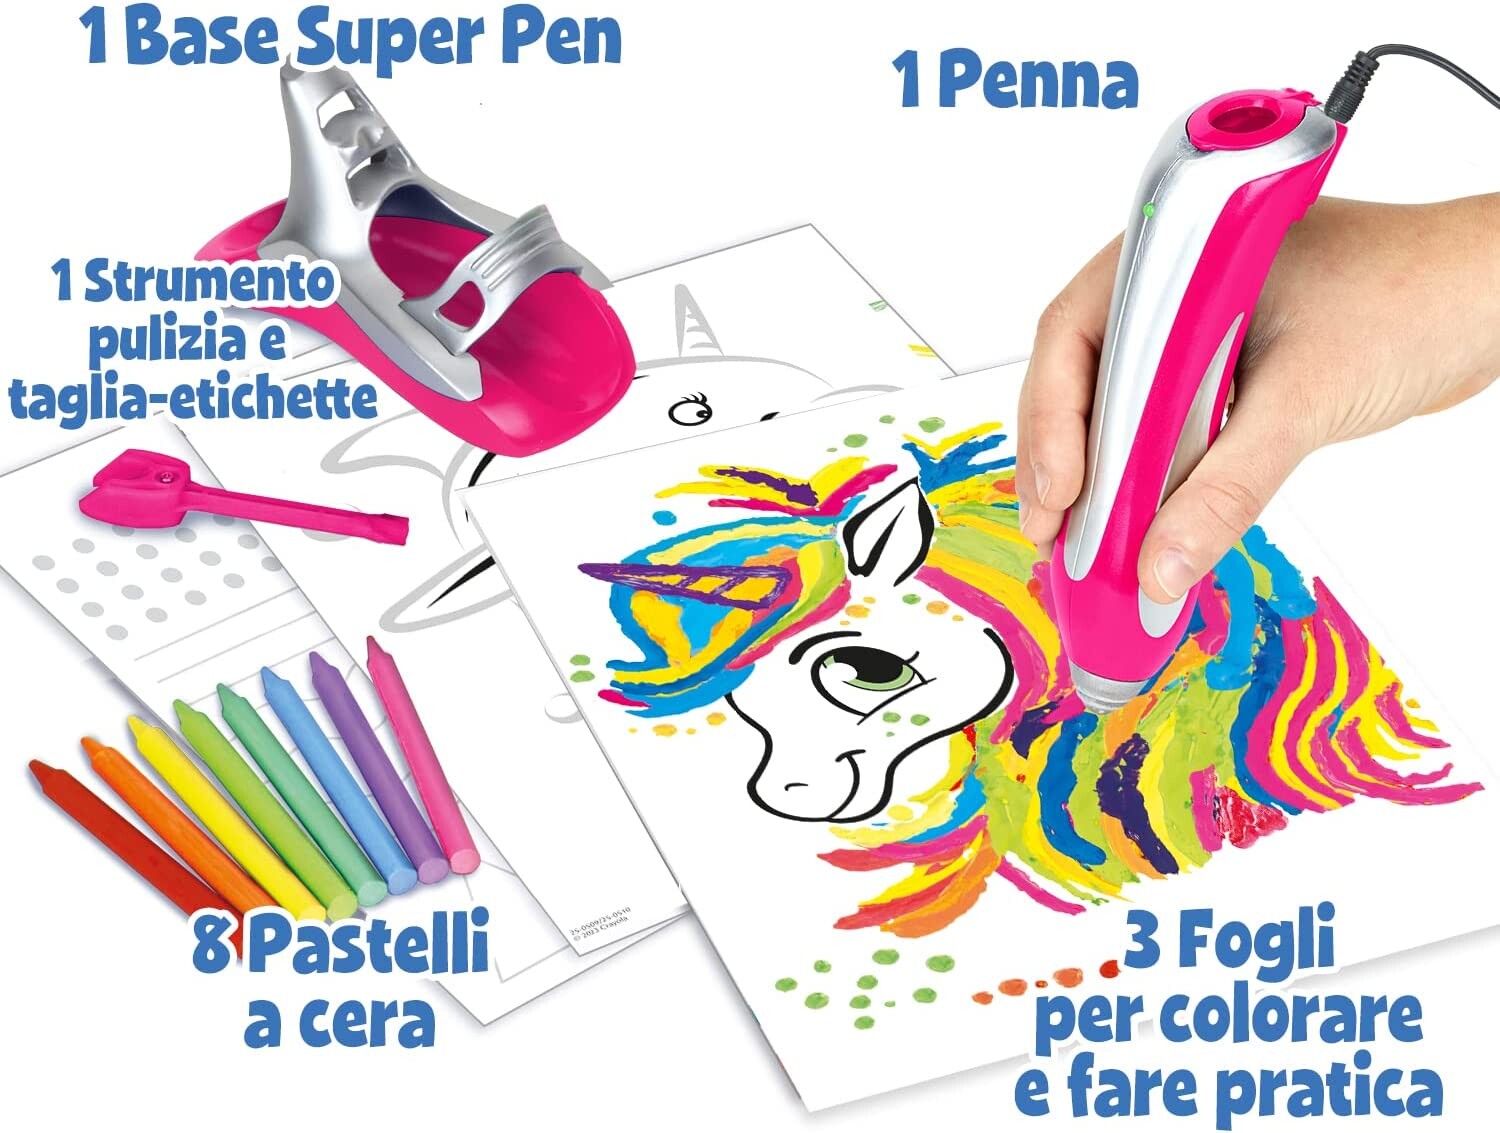 Crayola - super pen unicorno neon, gioco per sciogliere i pastelli